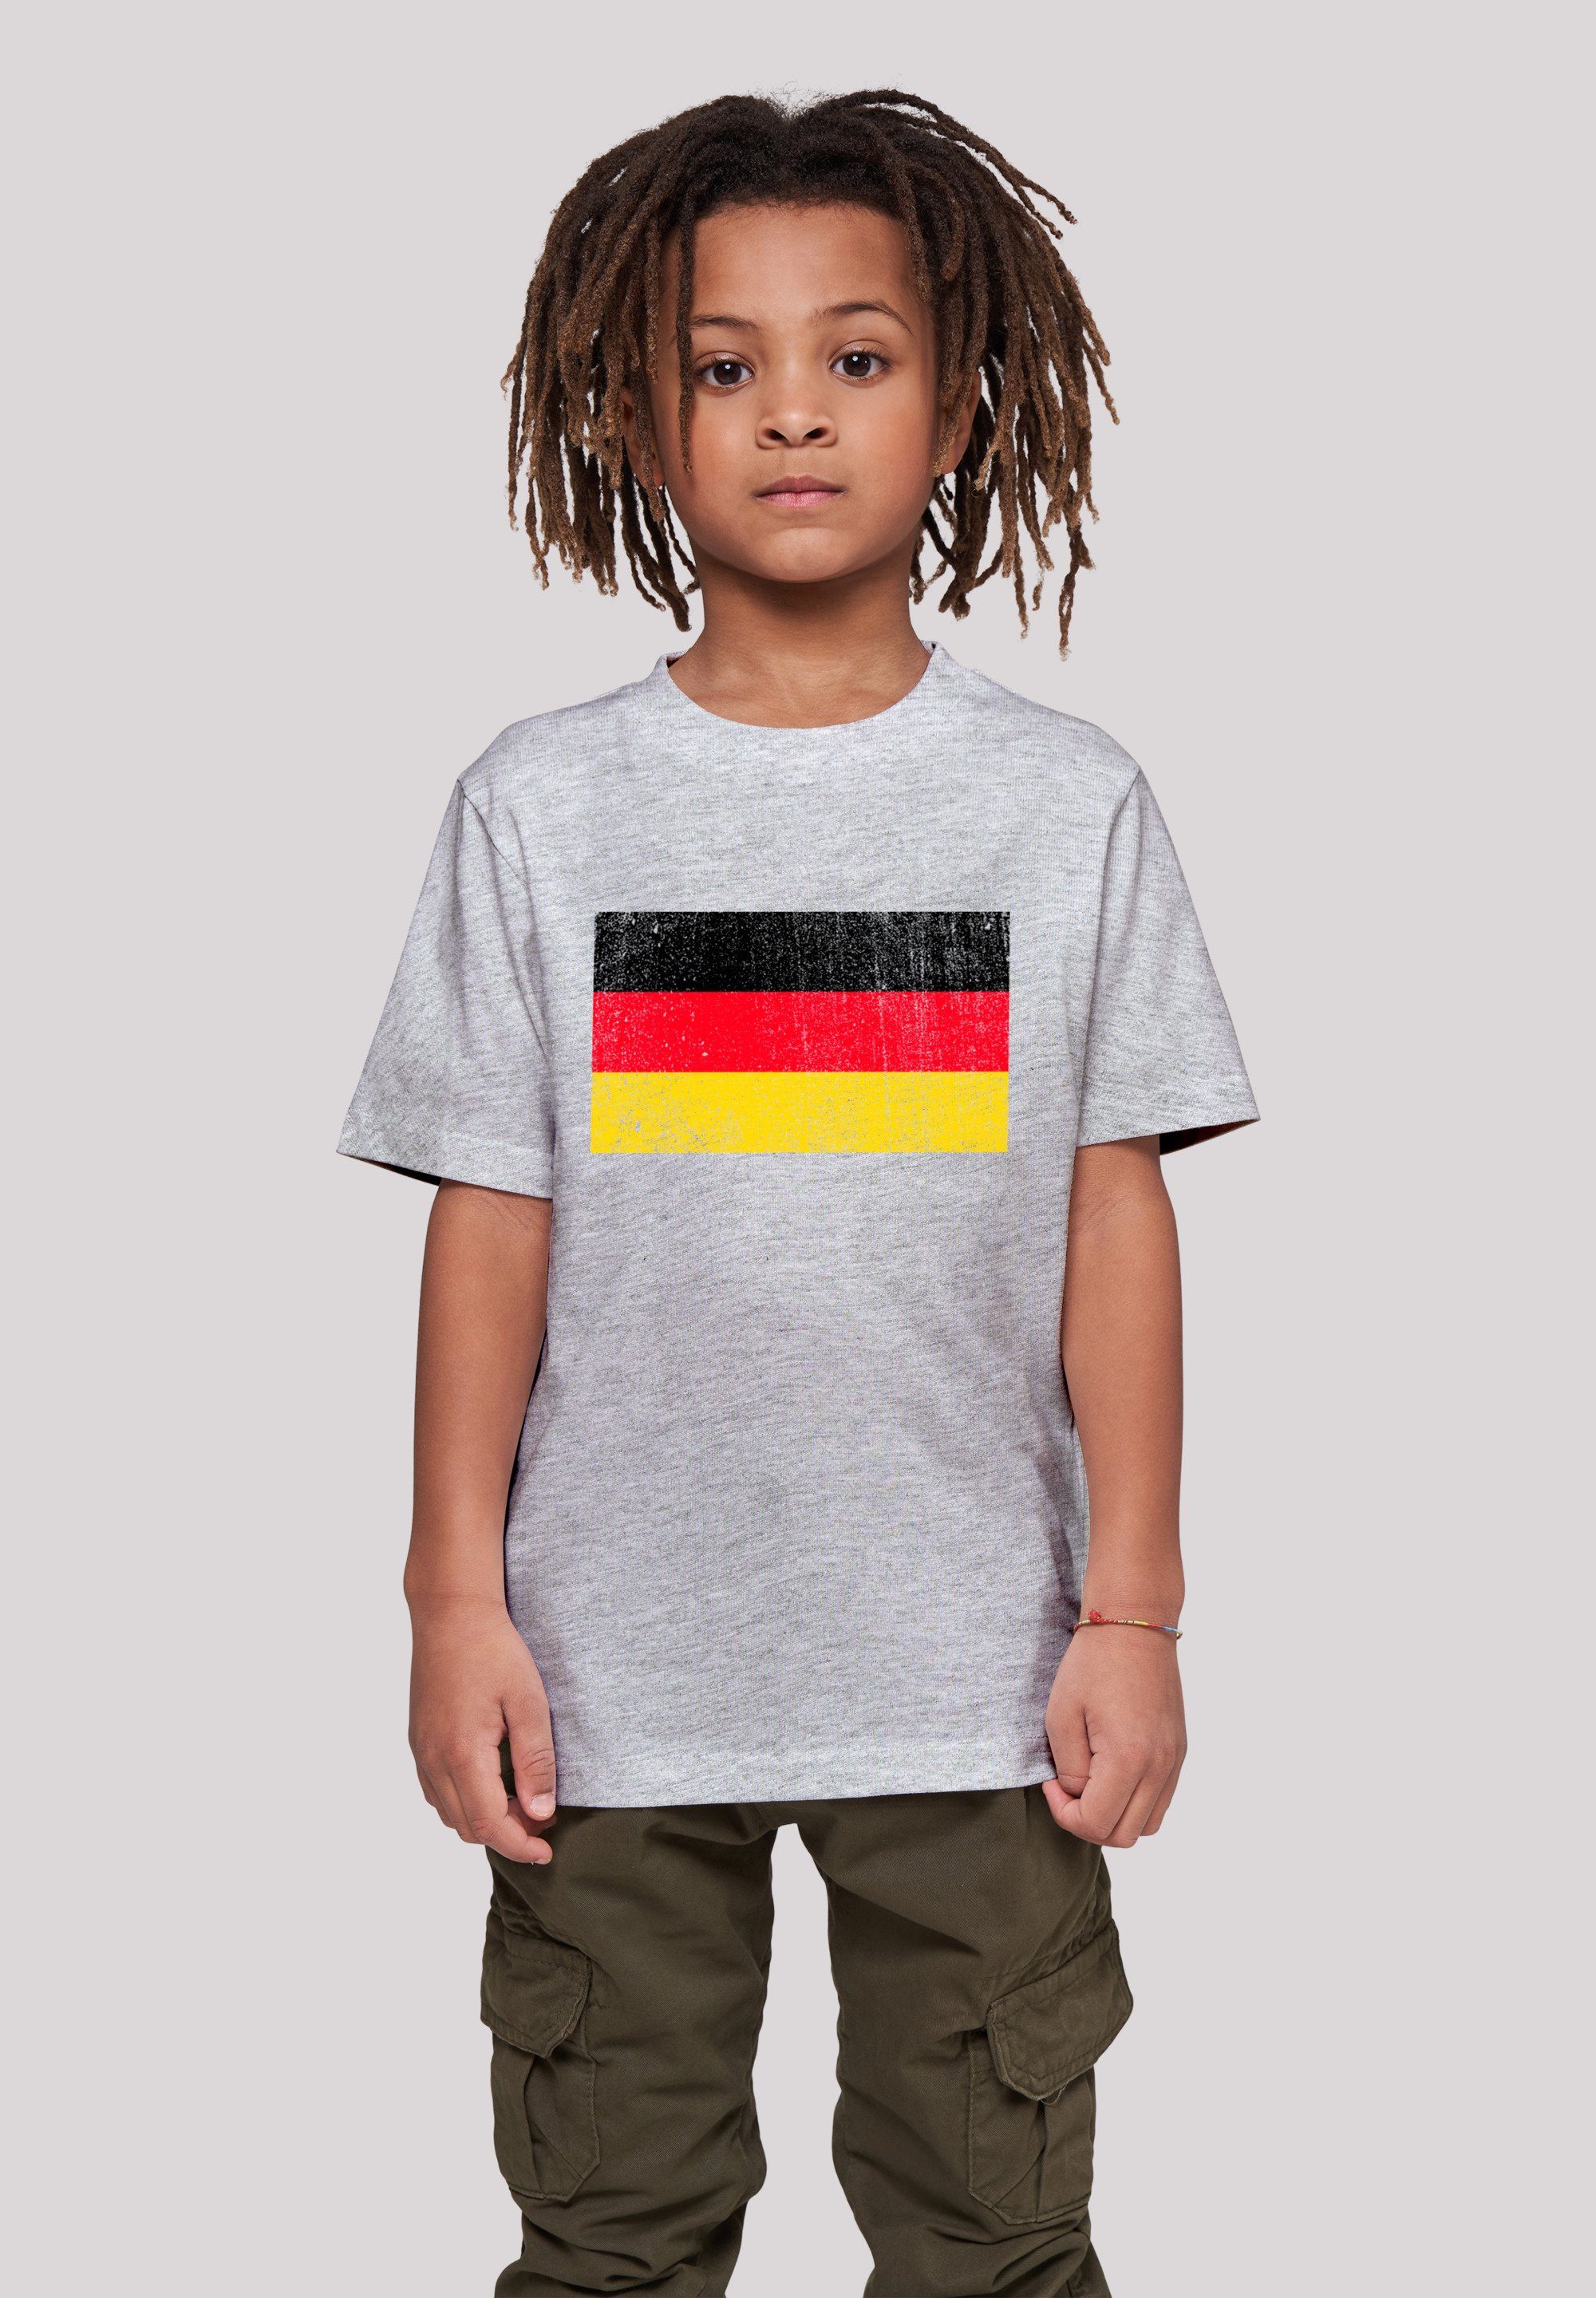 F4NT4STIC T-Shirt Germany Deutschland Flagge distressed Print, Das Model  ist 145 cm groß und trägt Größe 145/152